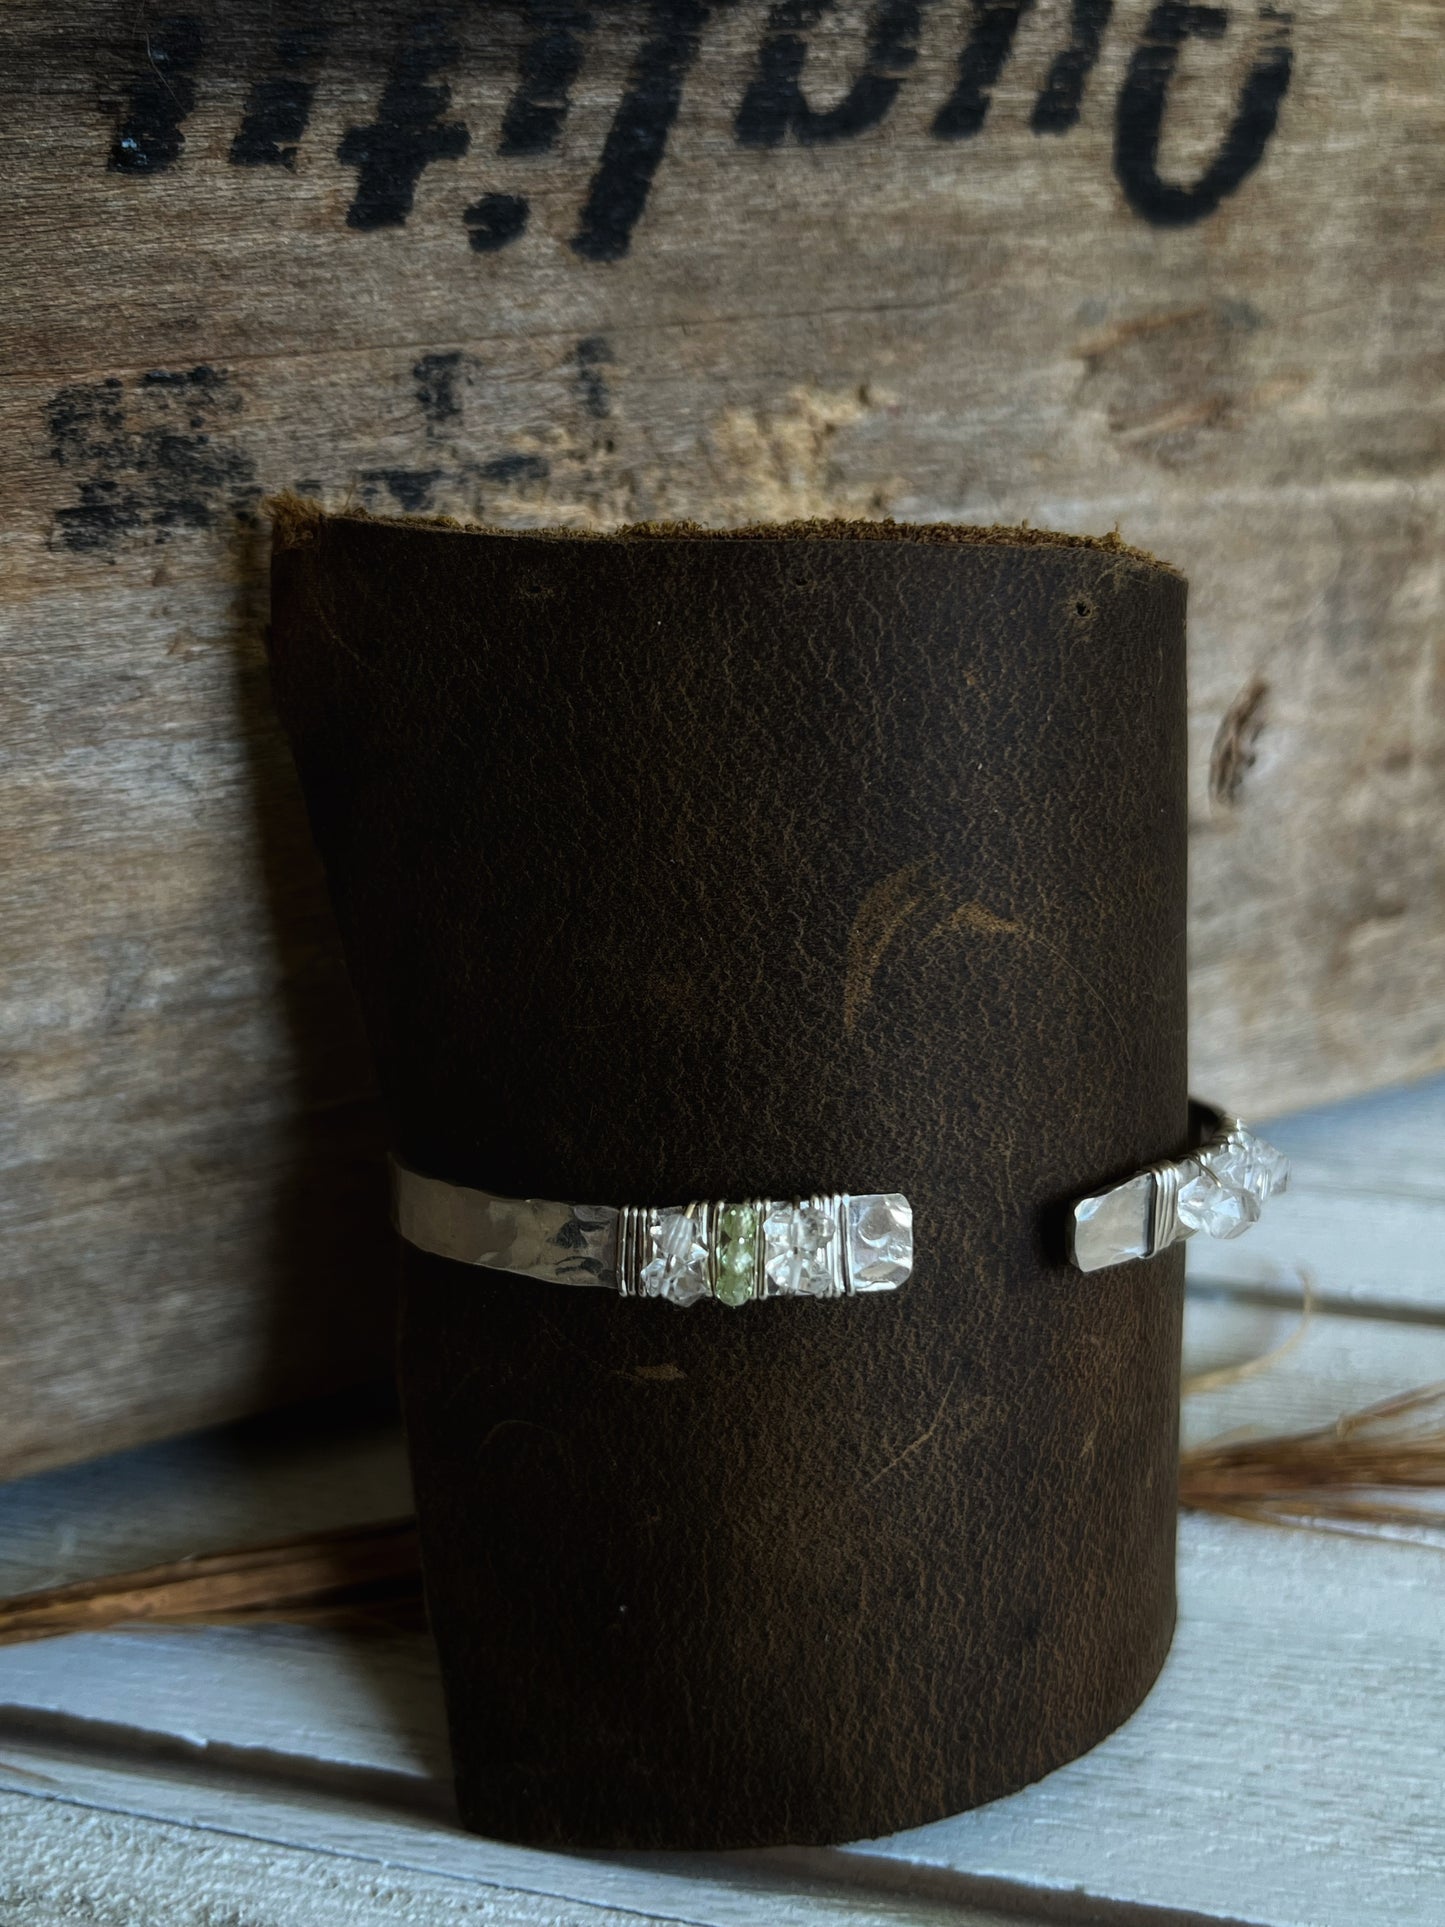 Hammered Herkimer Diamond + Peridot Cuff Bracelet ♢ rts